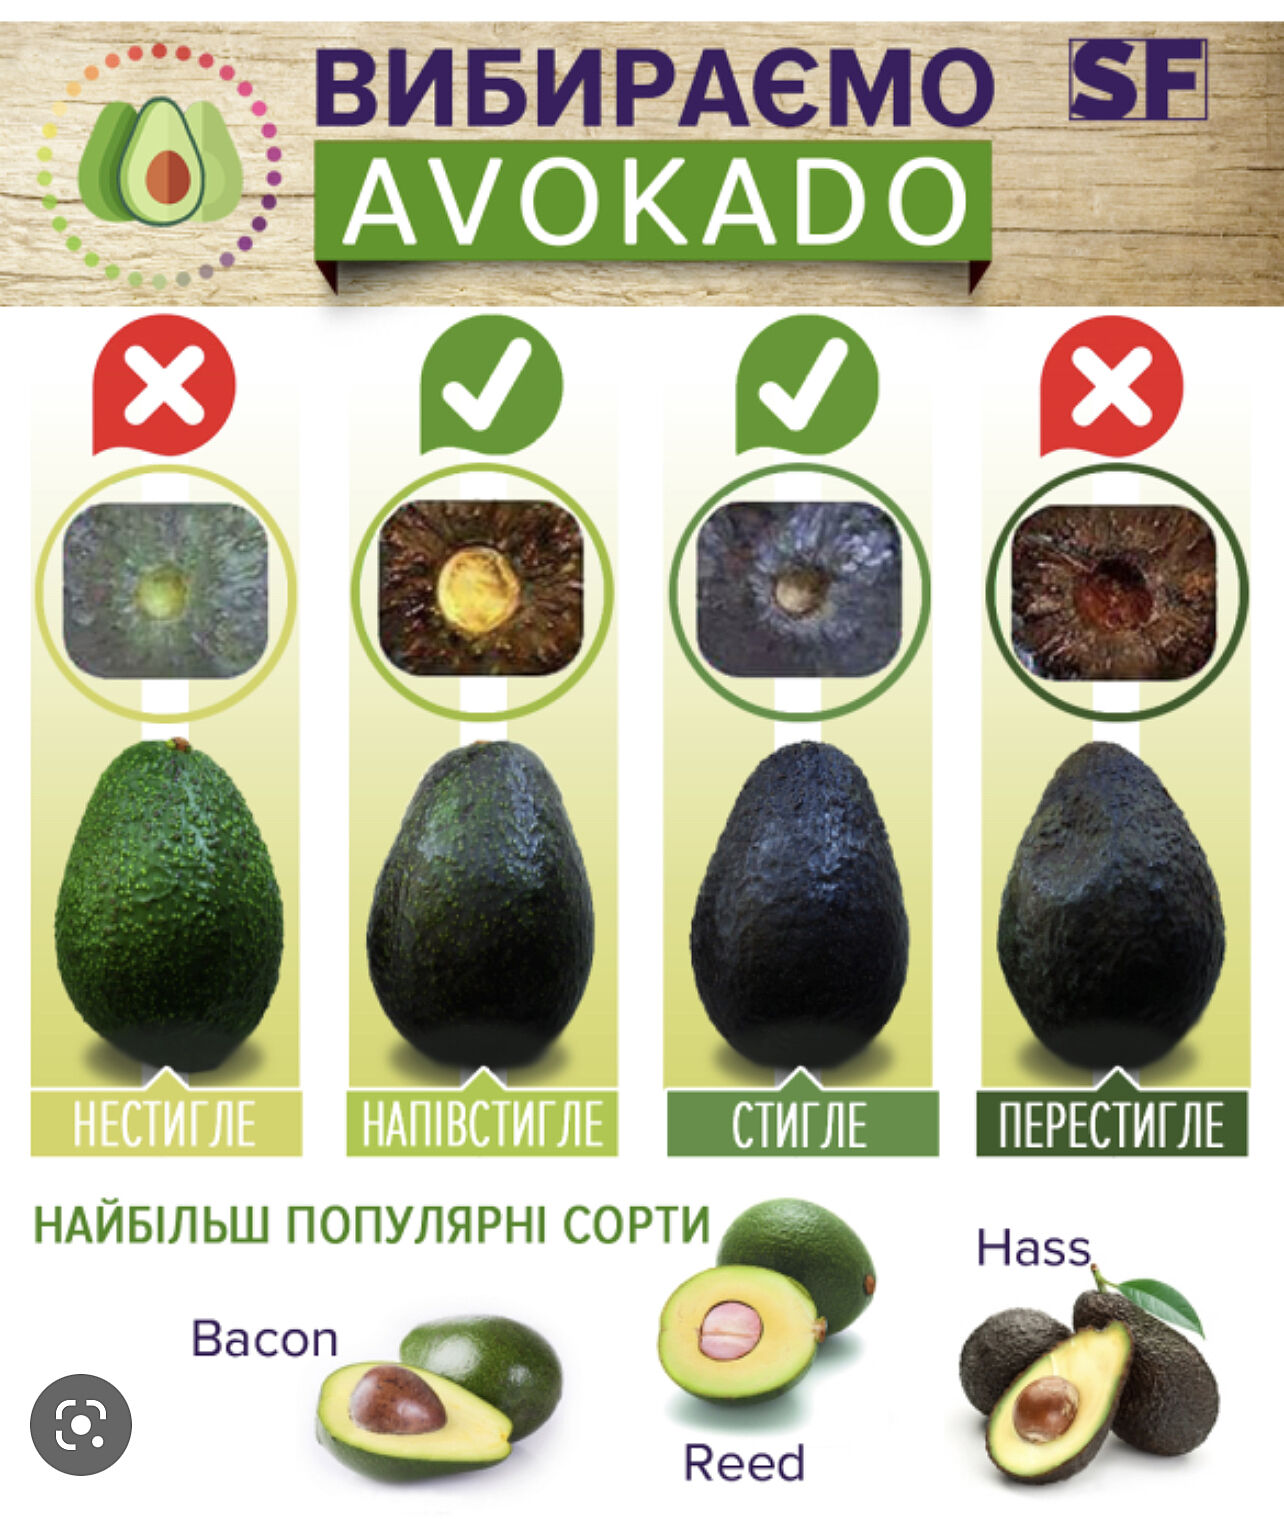 Споживання потемнілого авокадо